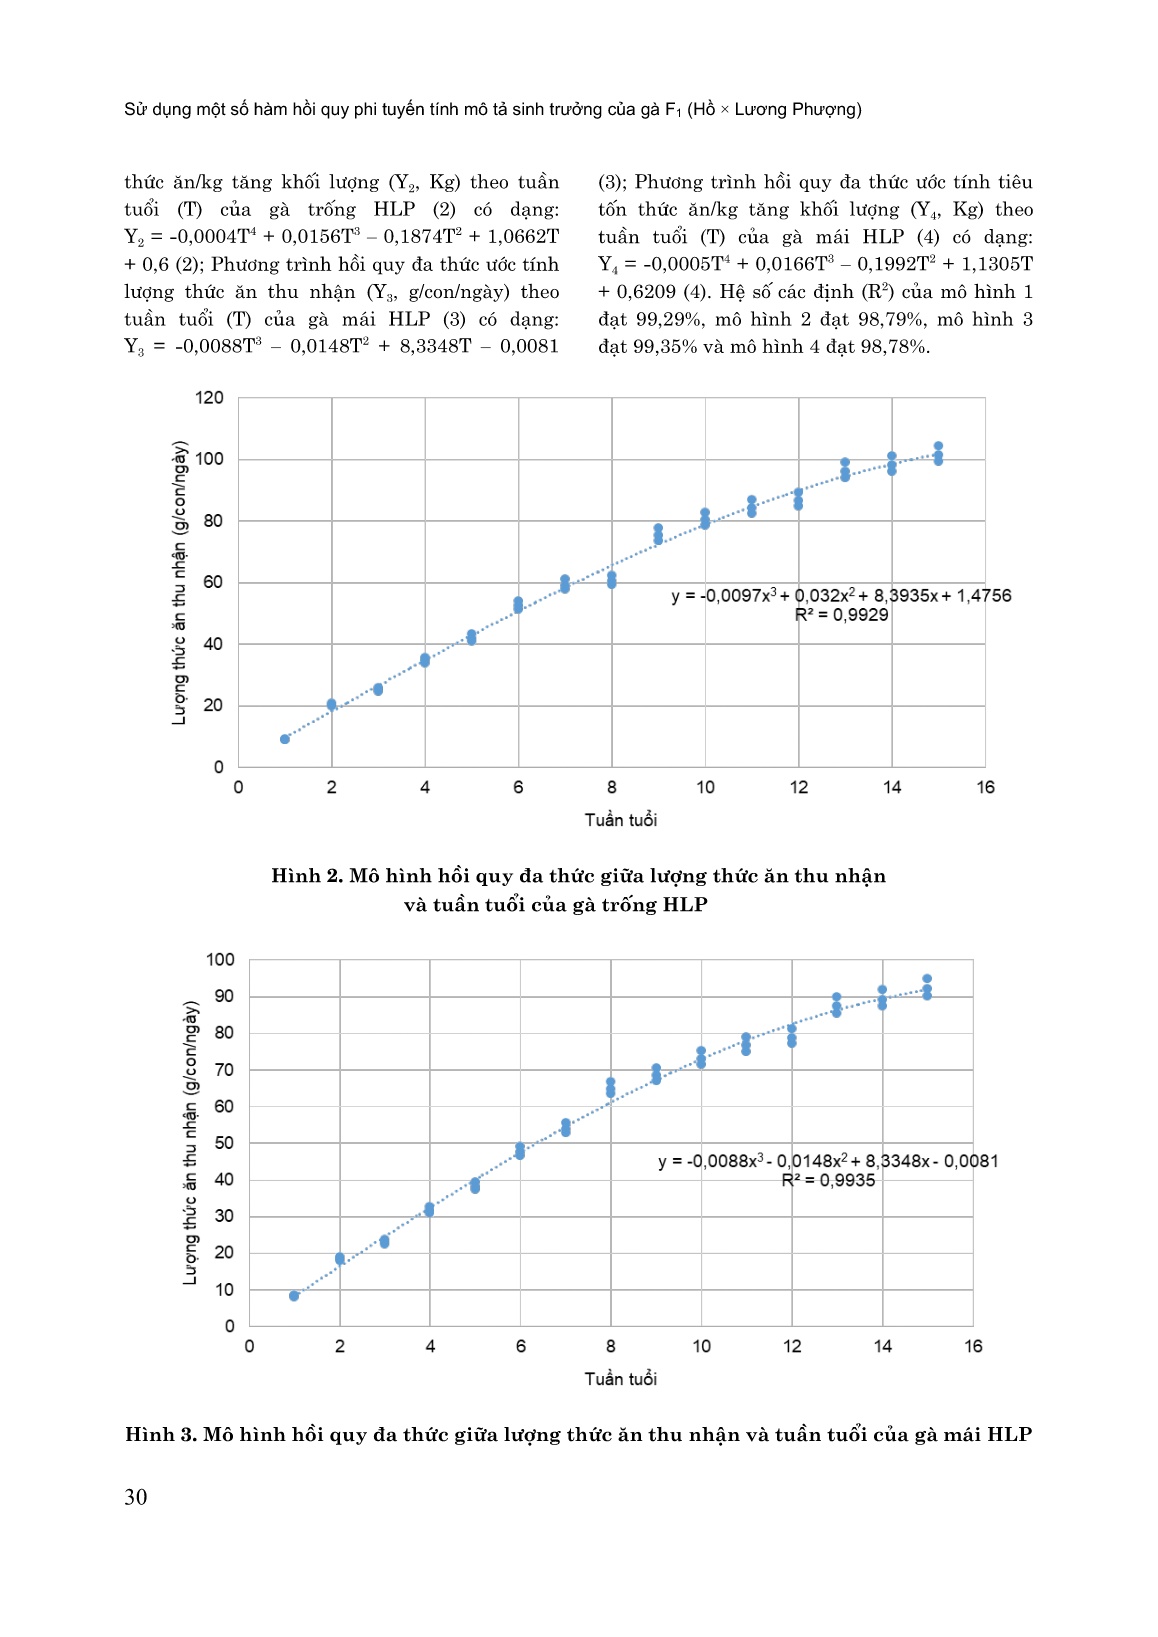 Sử dụng một số hàm hổi quy phi tuyến tính mô tả sinh trưởng của gà F₁ (Hồ × Lương Phượng) trang 7